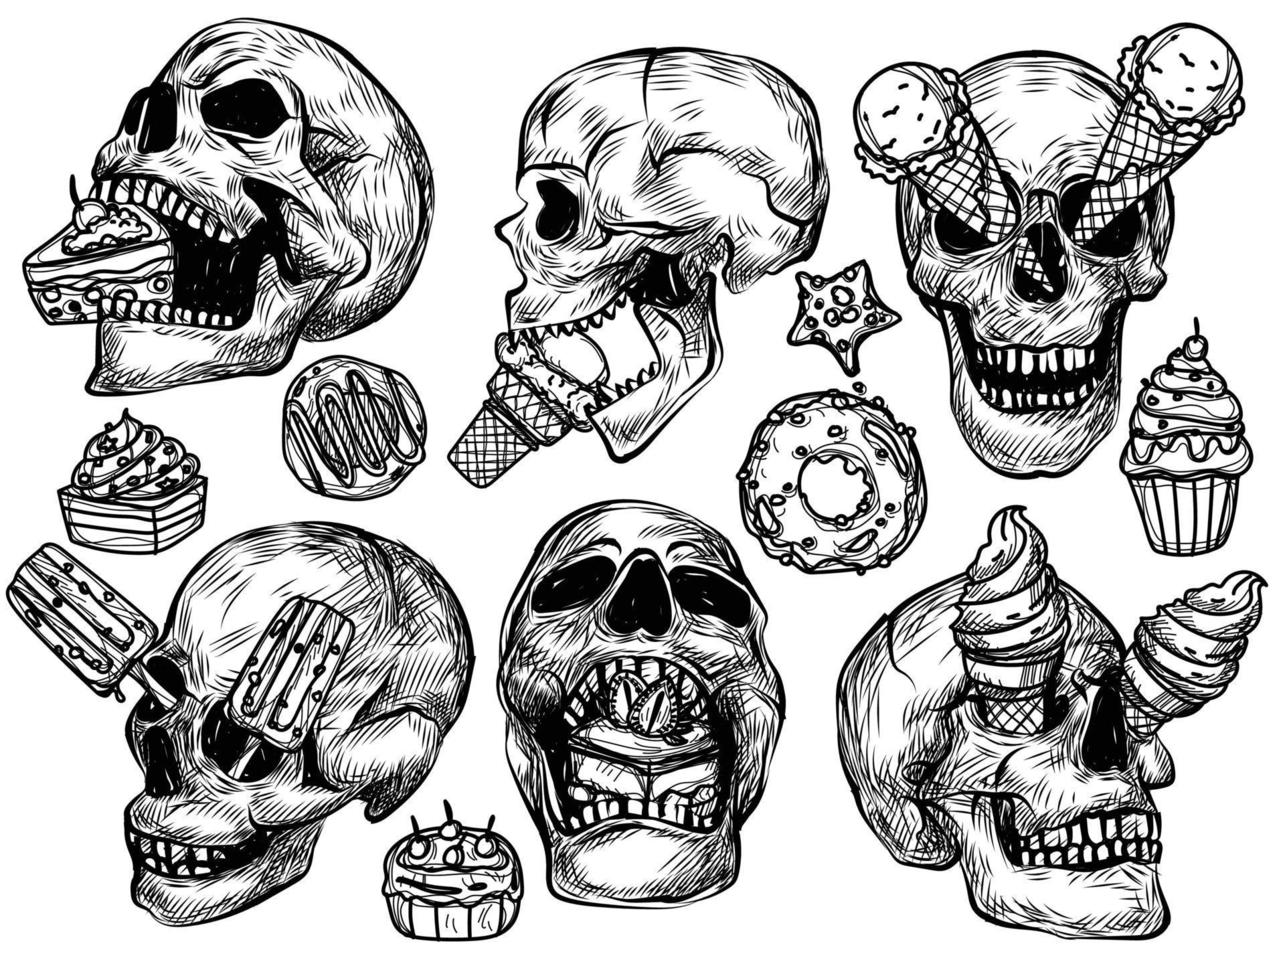 arte del tatuaje cráneo helado dibujo a mano y boceto en blanco y negro vector